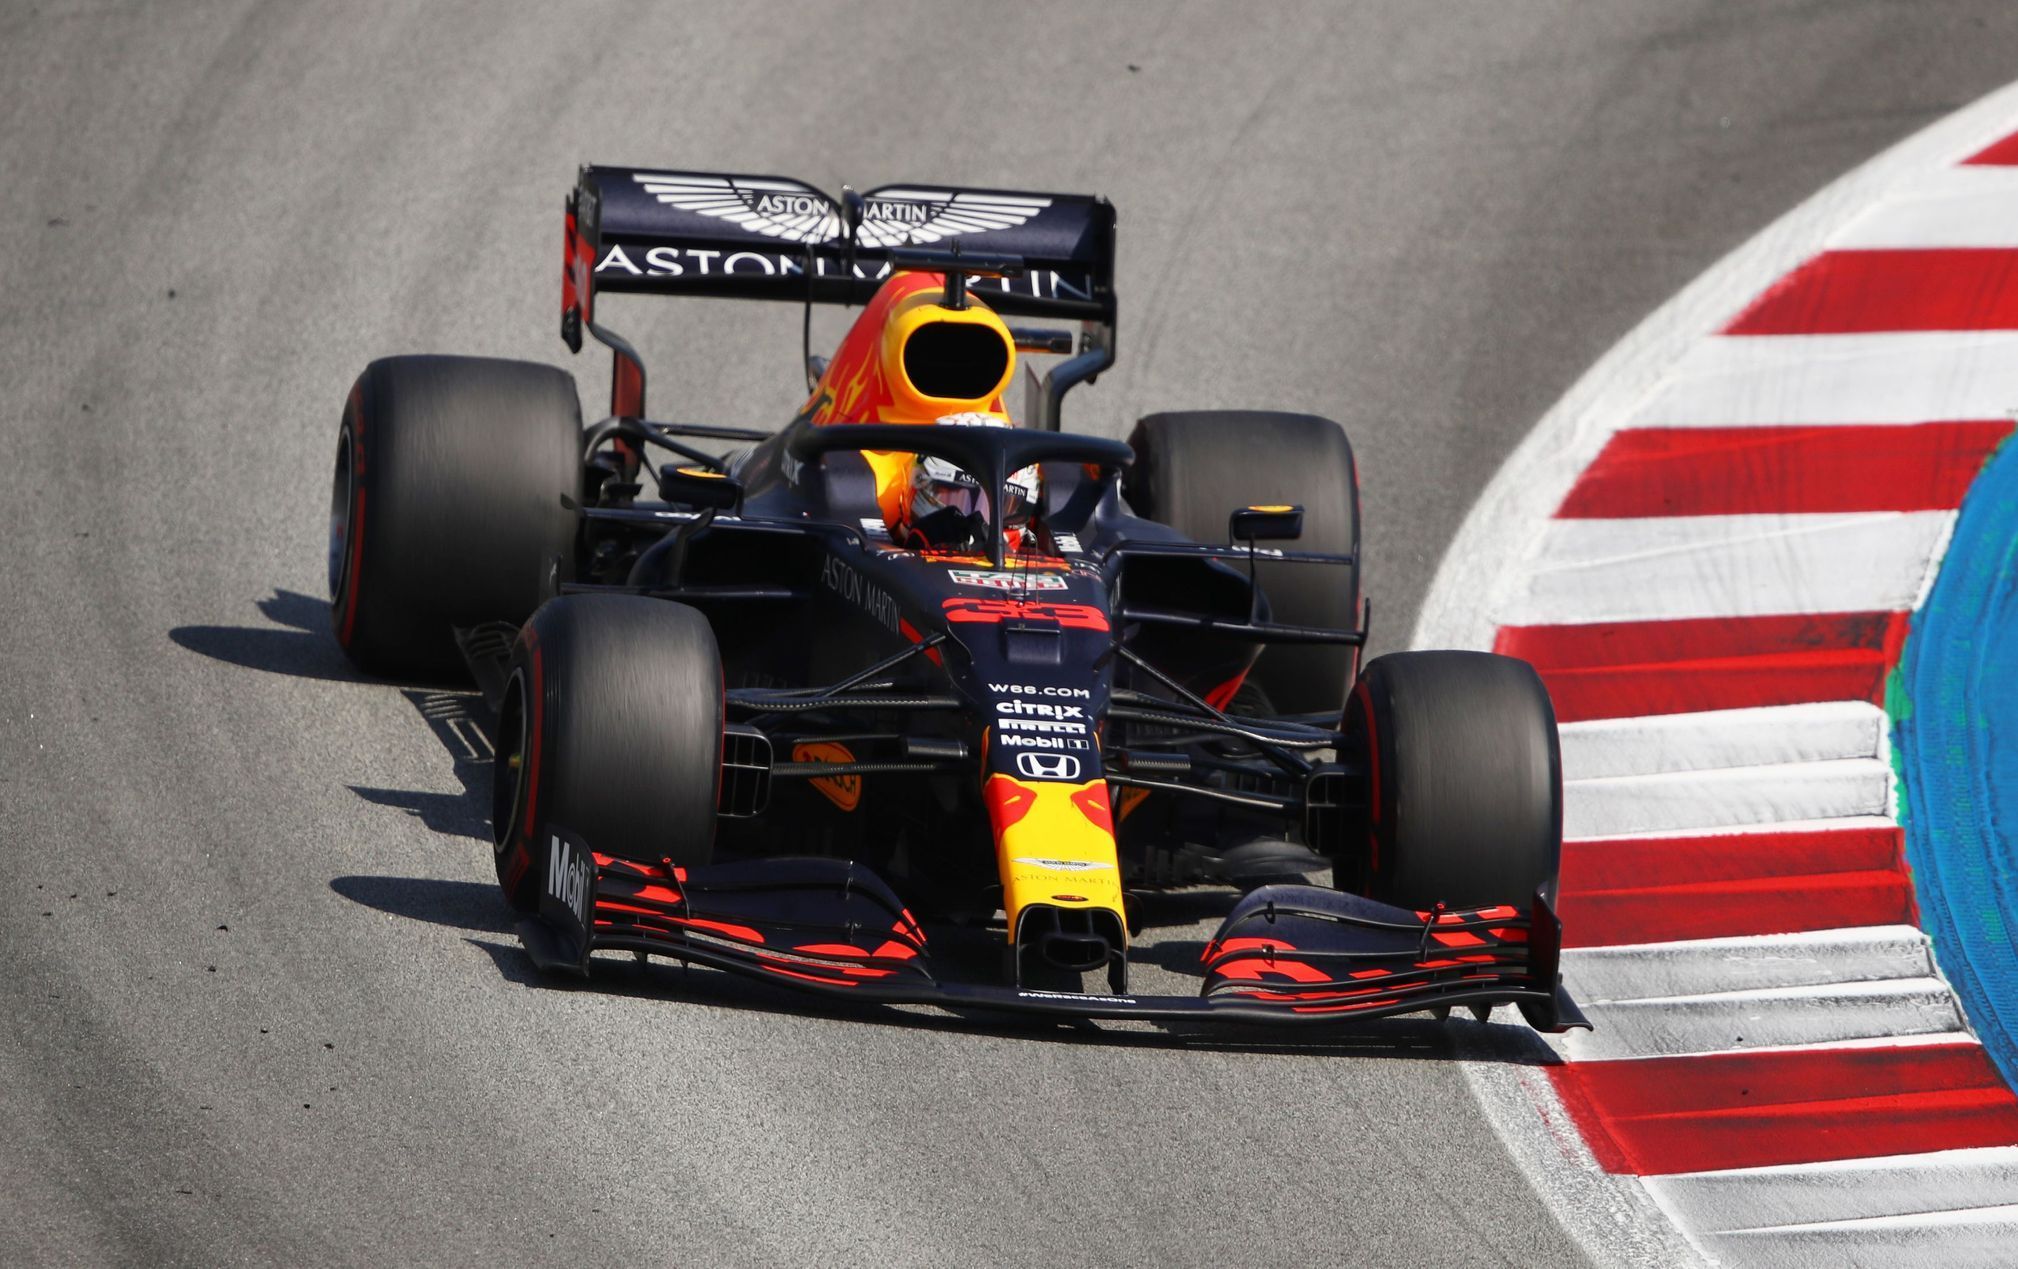 Max Verstappen v Red Bullu ve Velké ceně Španělska F1 2020